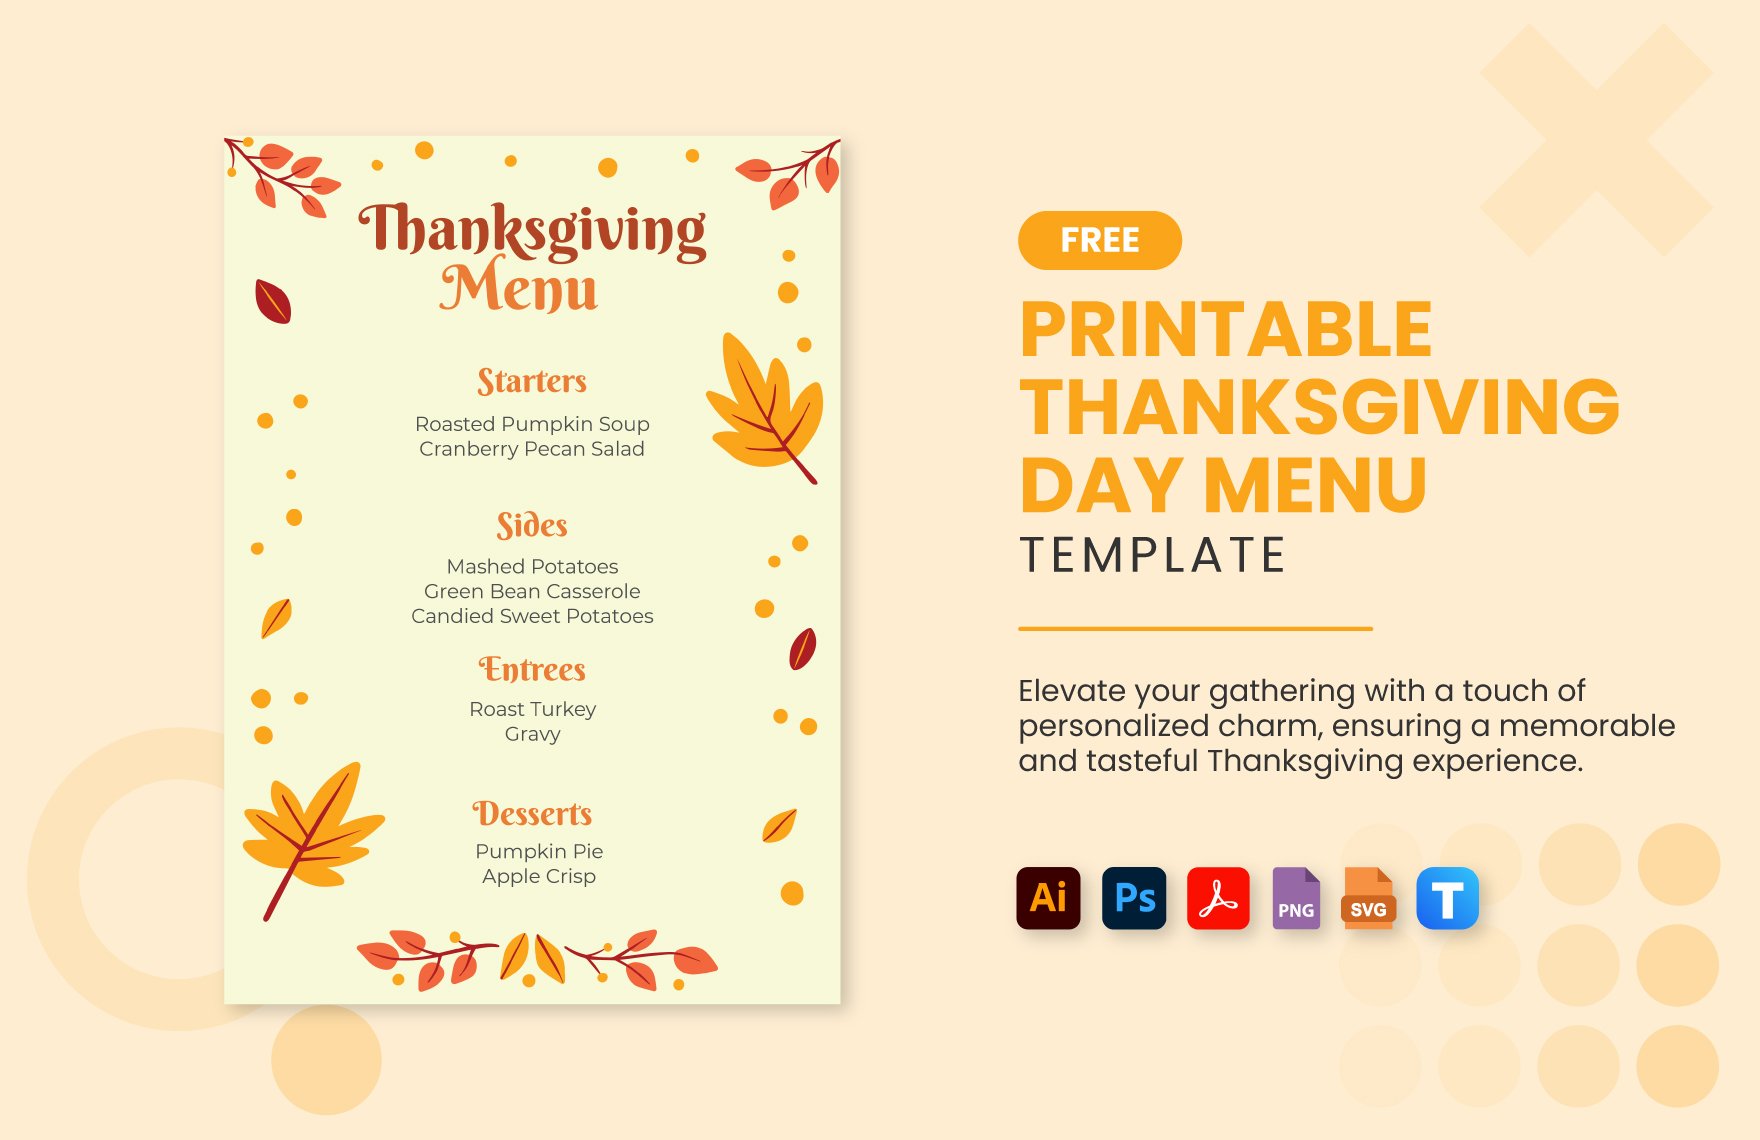 Free Printable Thanksgiving Day Menu